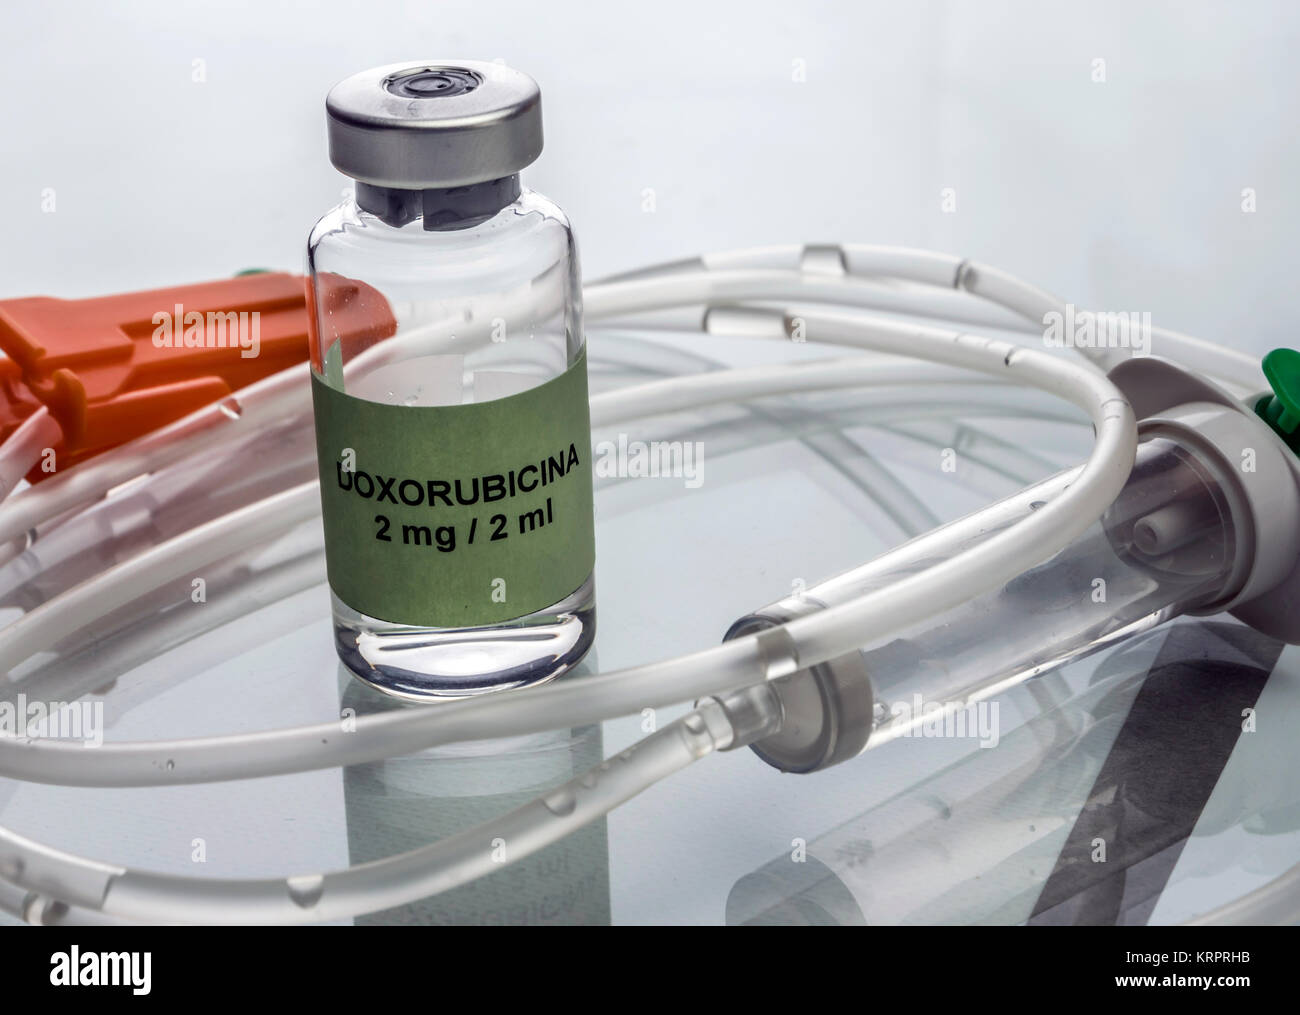 La doxorubicina flaconcino con irrigazione a goccia, il farmaco utilizzato per acuta di leucemia linfatica malattia, immagine concettuale Foto Stock